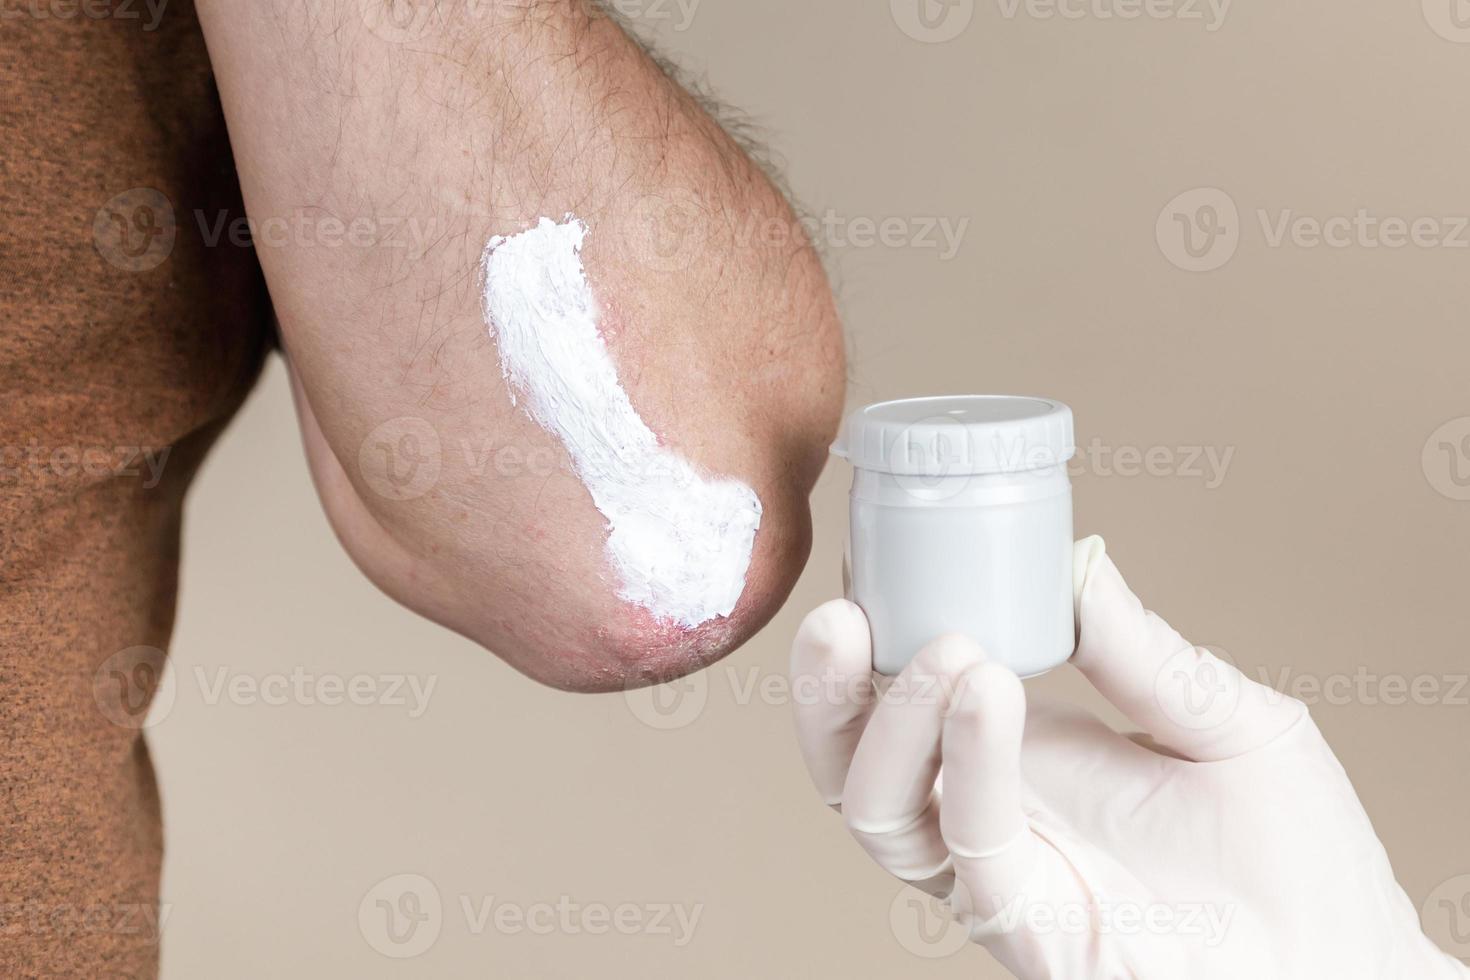 un dermatologo in guanti applica un unguento terapeutico sulla pelle colpita di un paziente con psoriasi foto